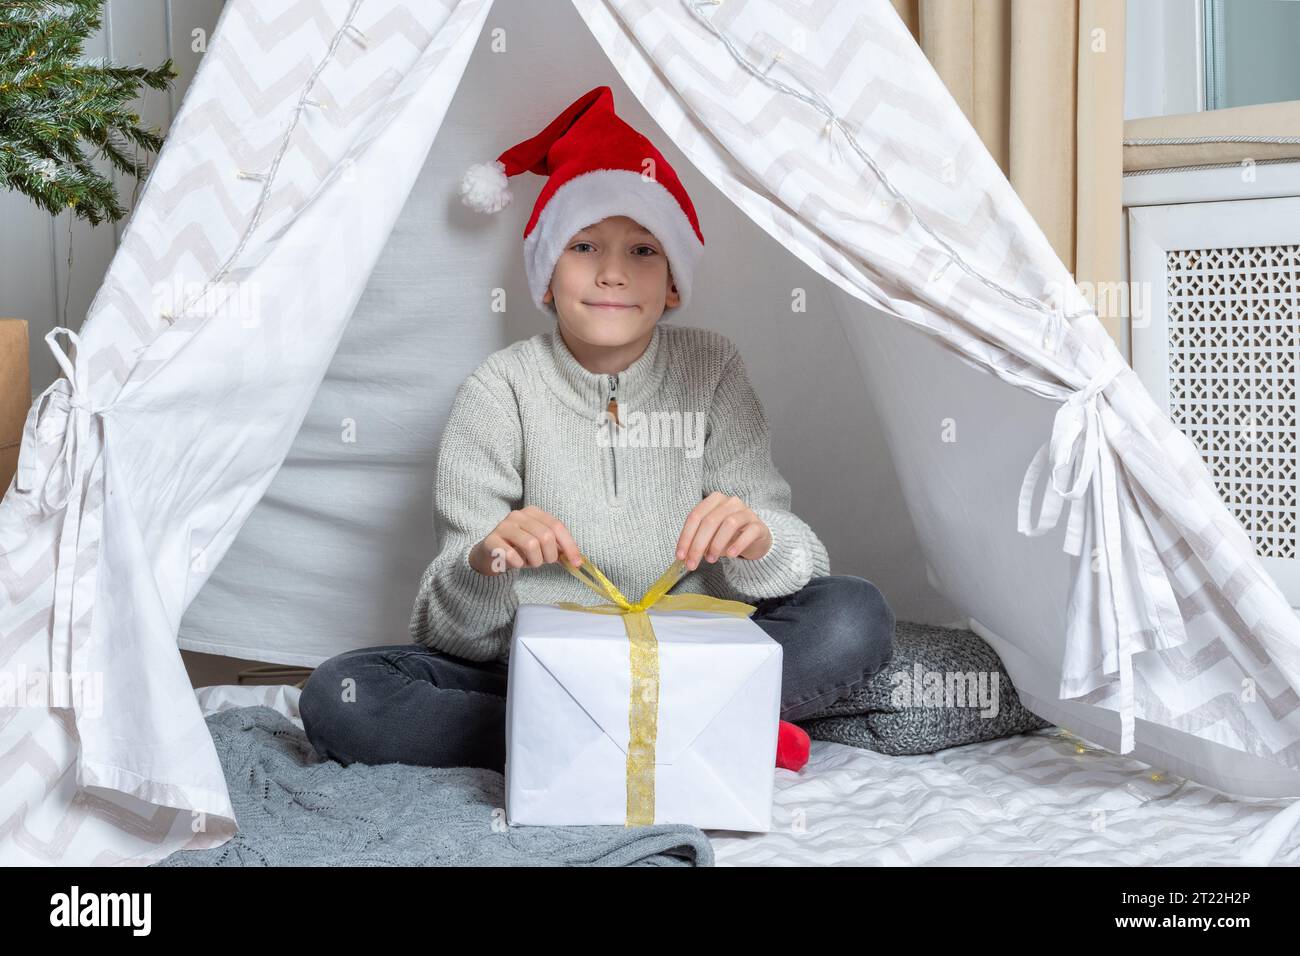 Ein Junge mit Weihnachtsmütze öffnet sein Geschenk zu Weihnachten Neujahr, liegend in einem Kinderzelt Wigwam im Kinderzimmer. Weihnachtsbaum mit Lichtern, Weihnachtszimmer Stockfoto